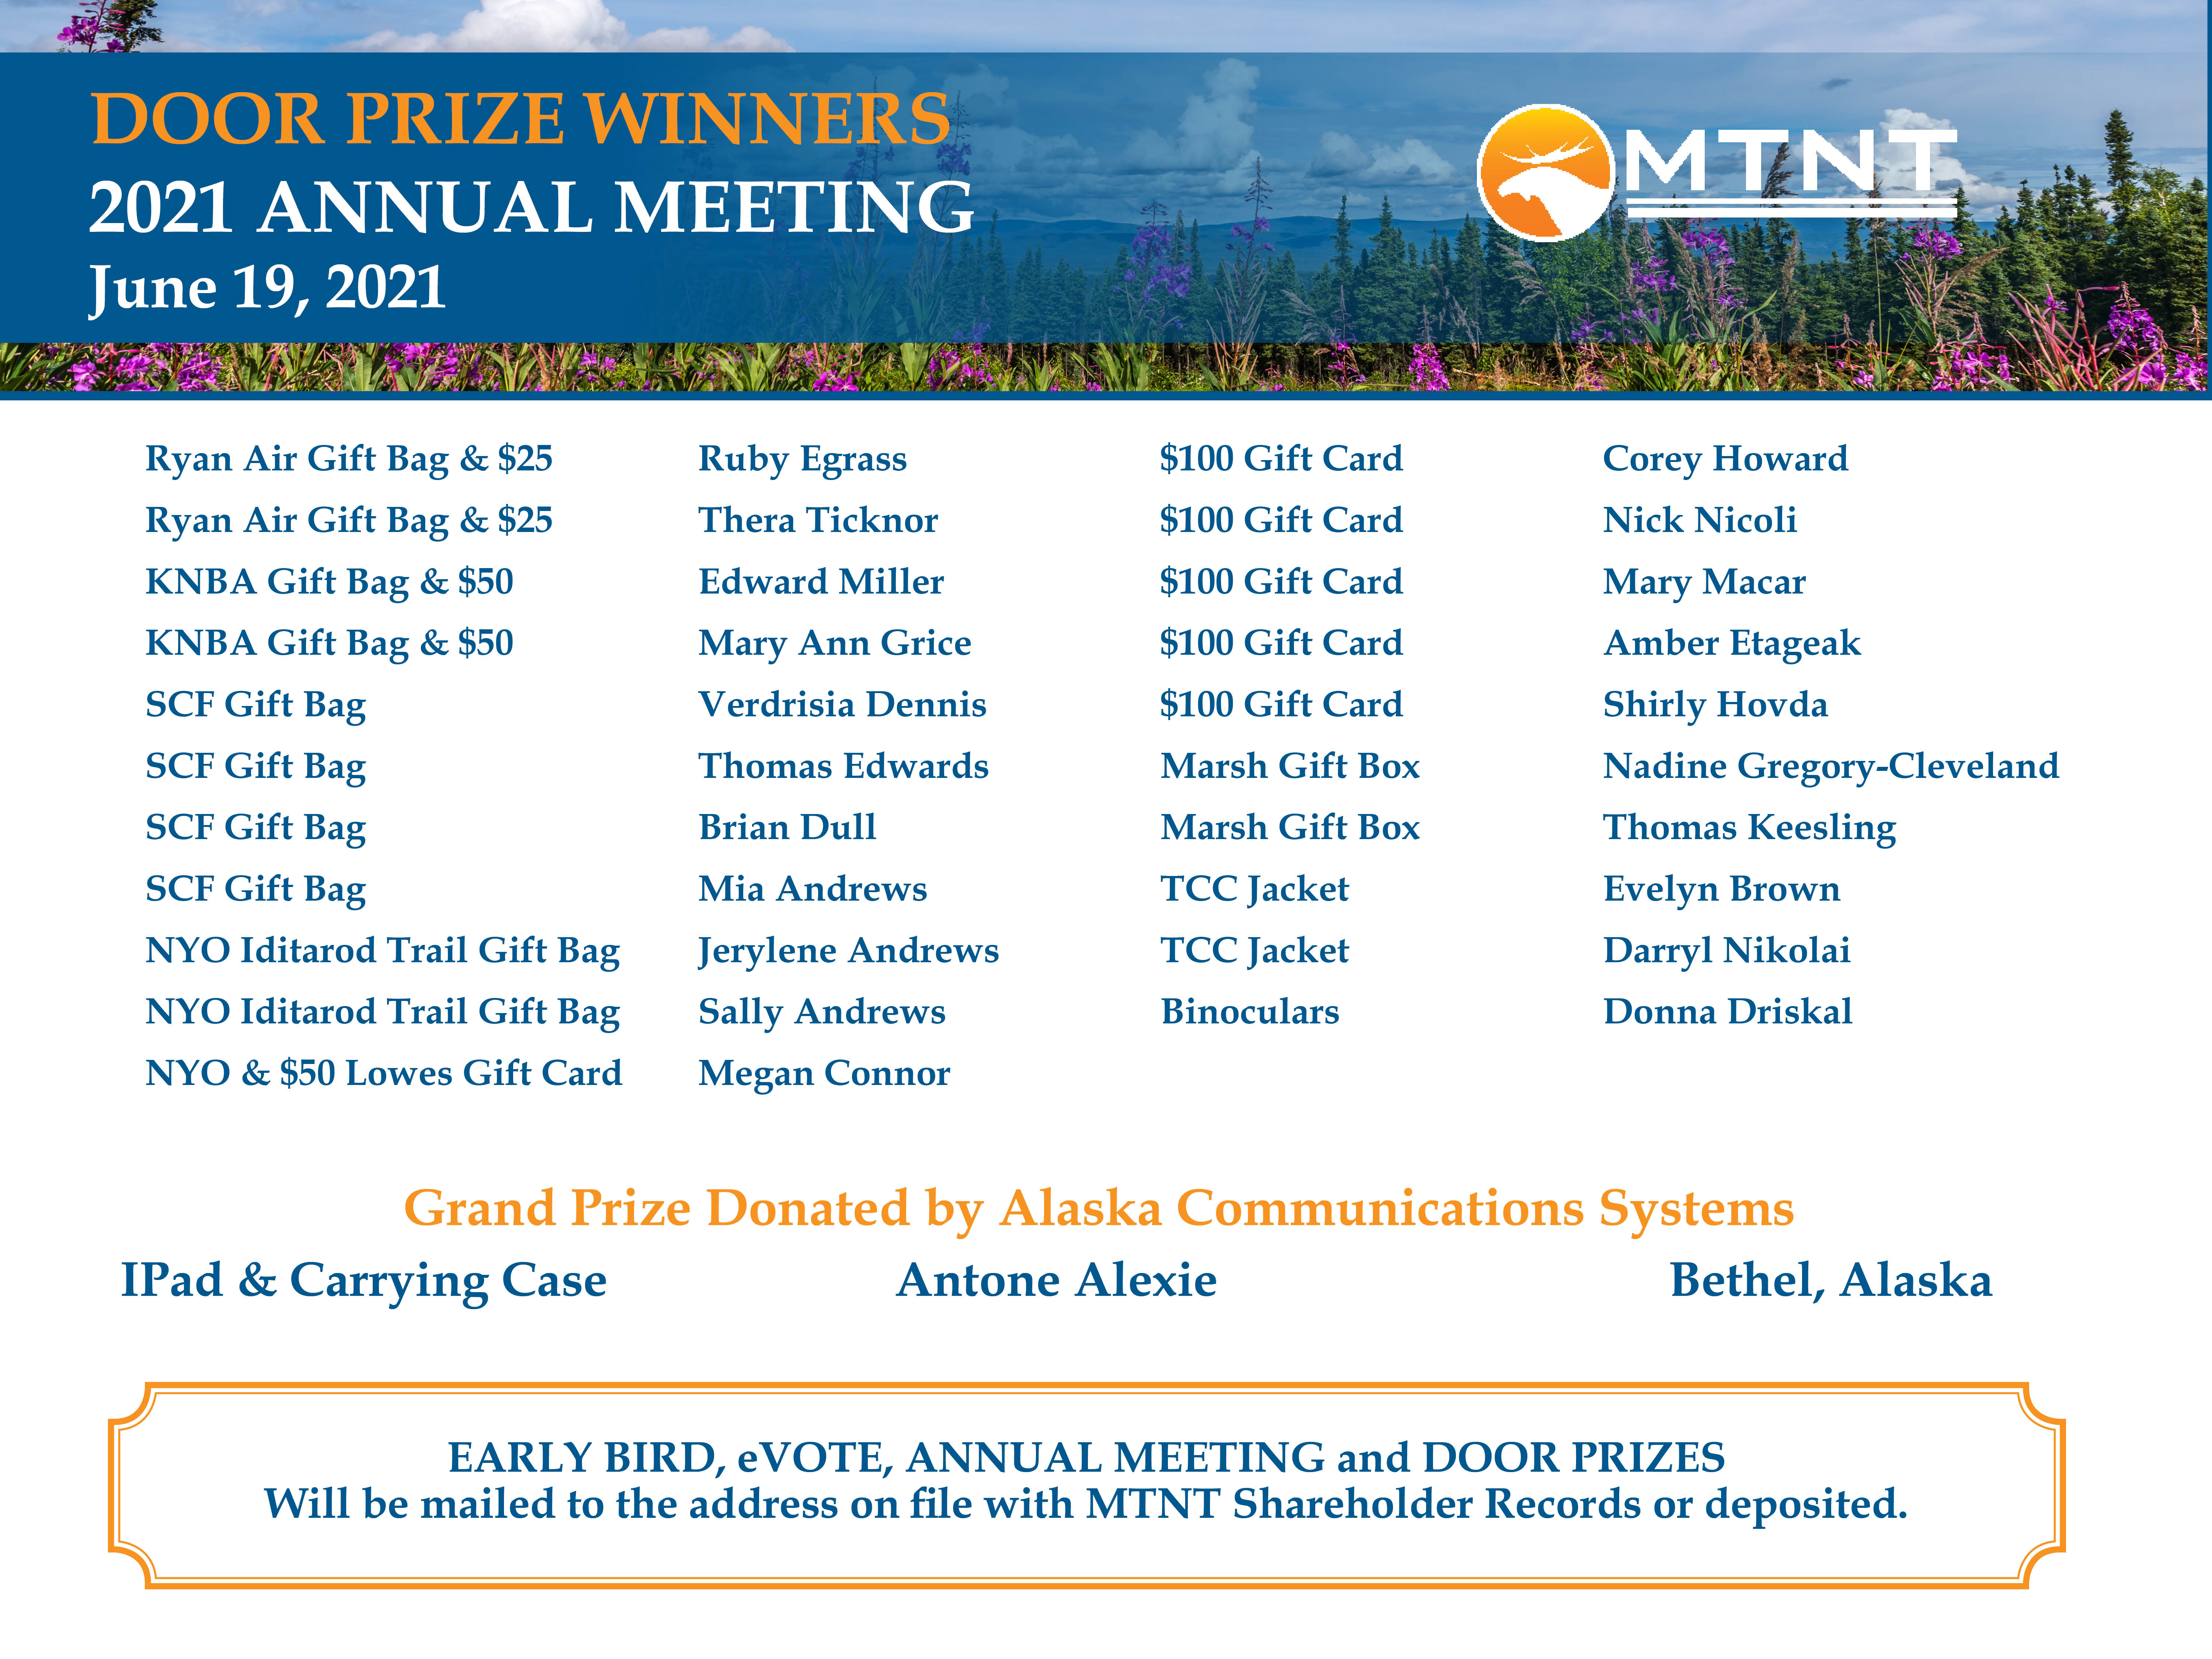 2021 Annual Meeting Prize Winners 06.22.2021.jpg